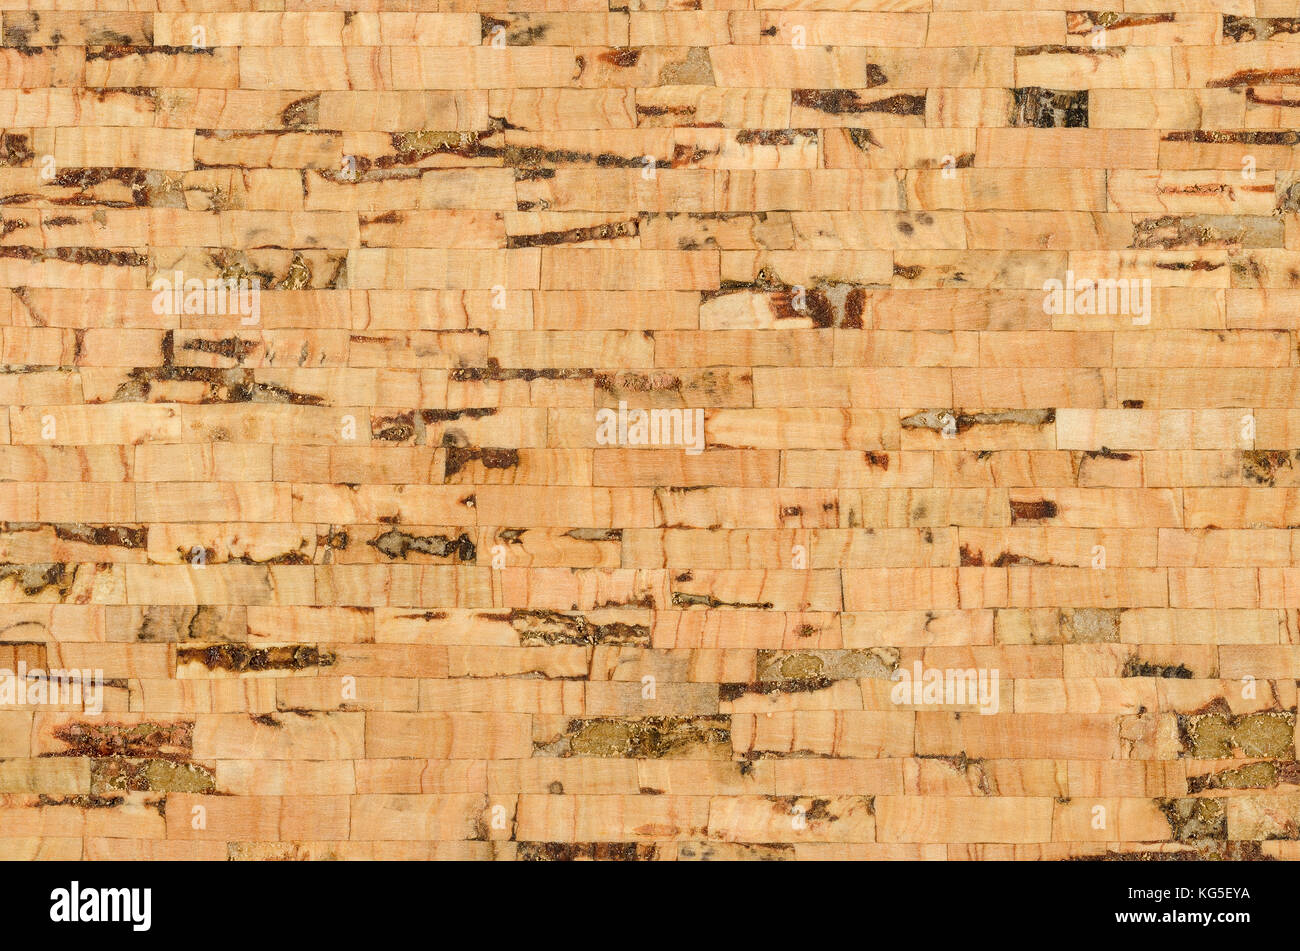 Superficie de hoja de corcho con capas paralelas, compuesto de varias capas de alcornoque, Quercus suber. Los paneles decorativos y las chapas de madera, utilizado como tablones de anuncios. Foto de stock